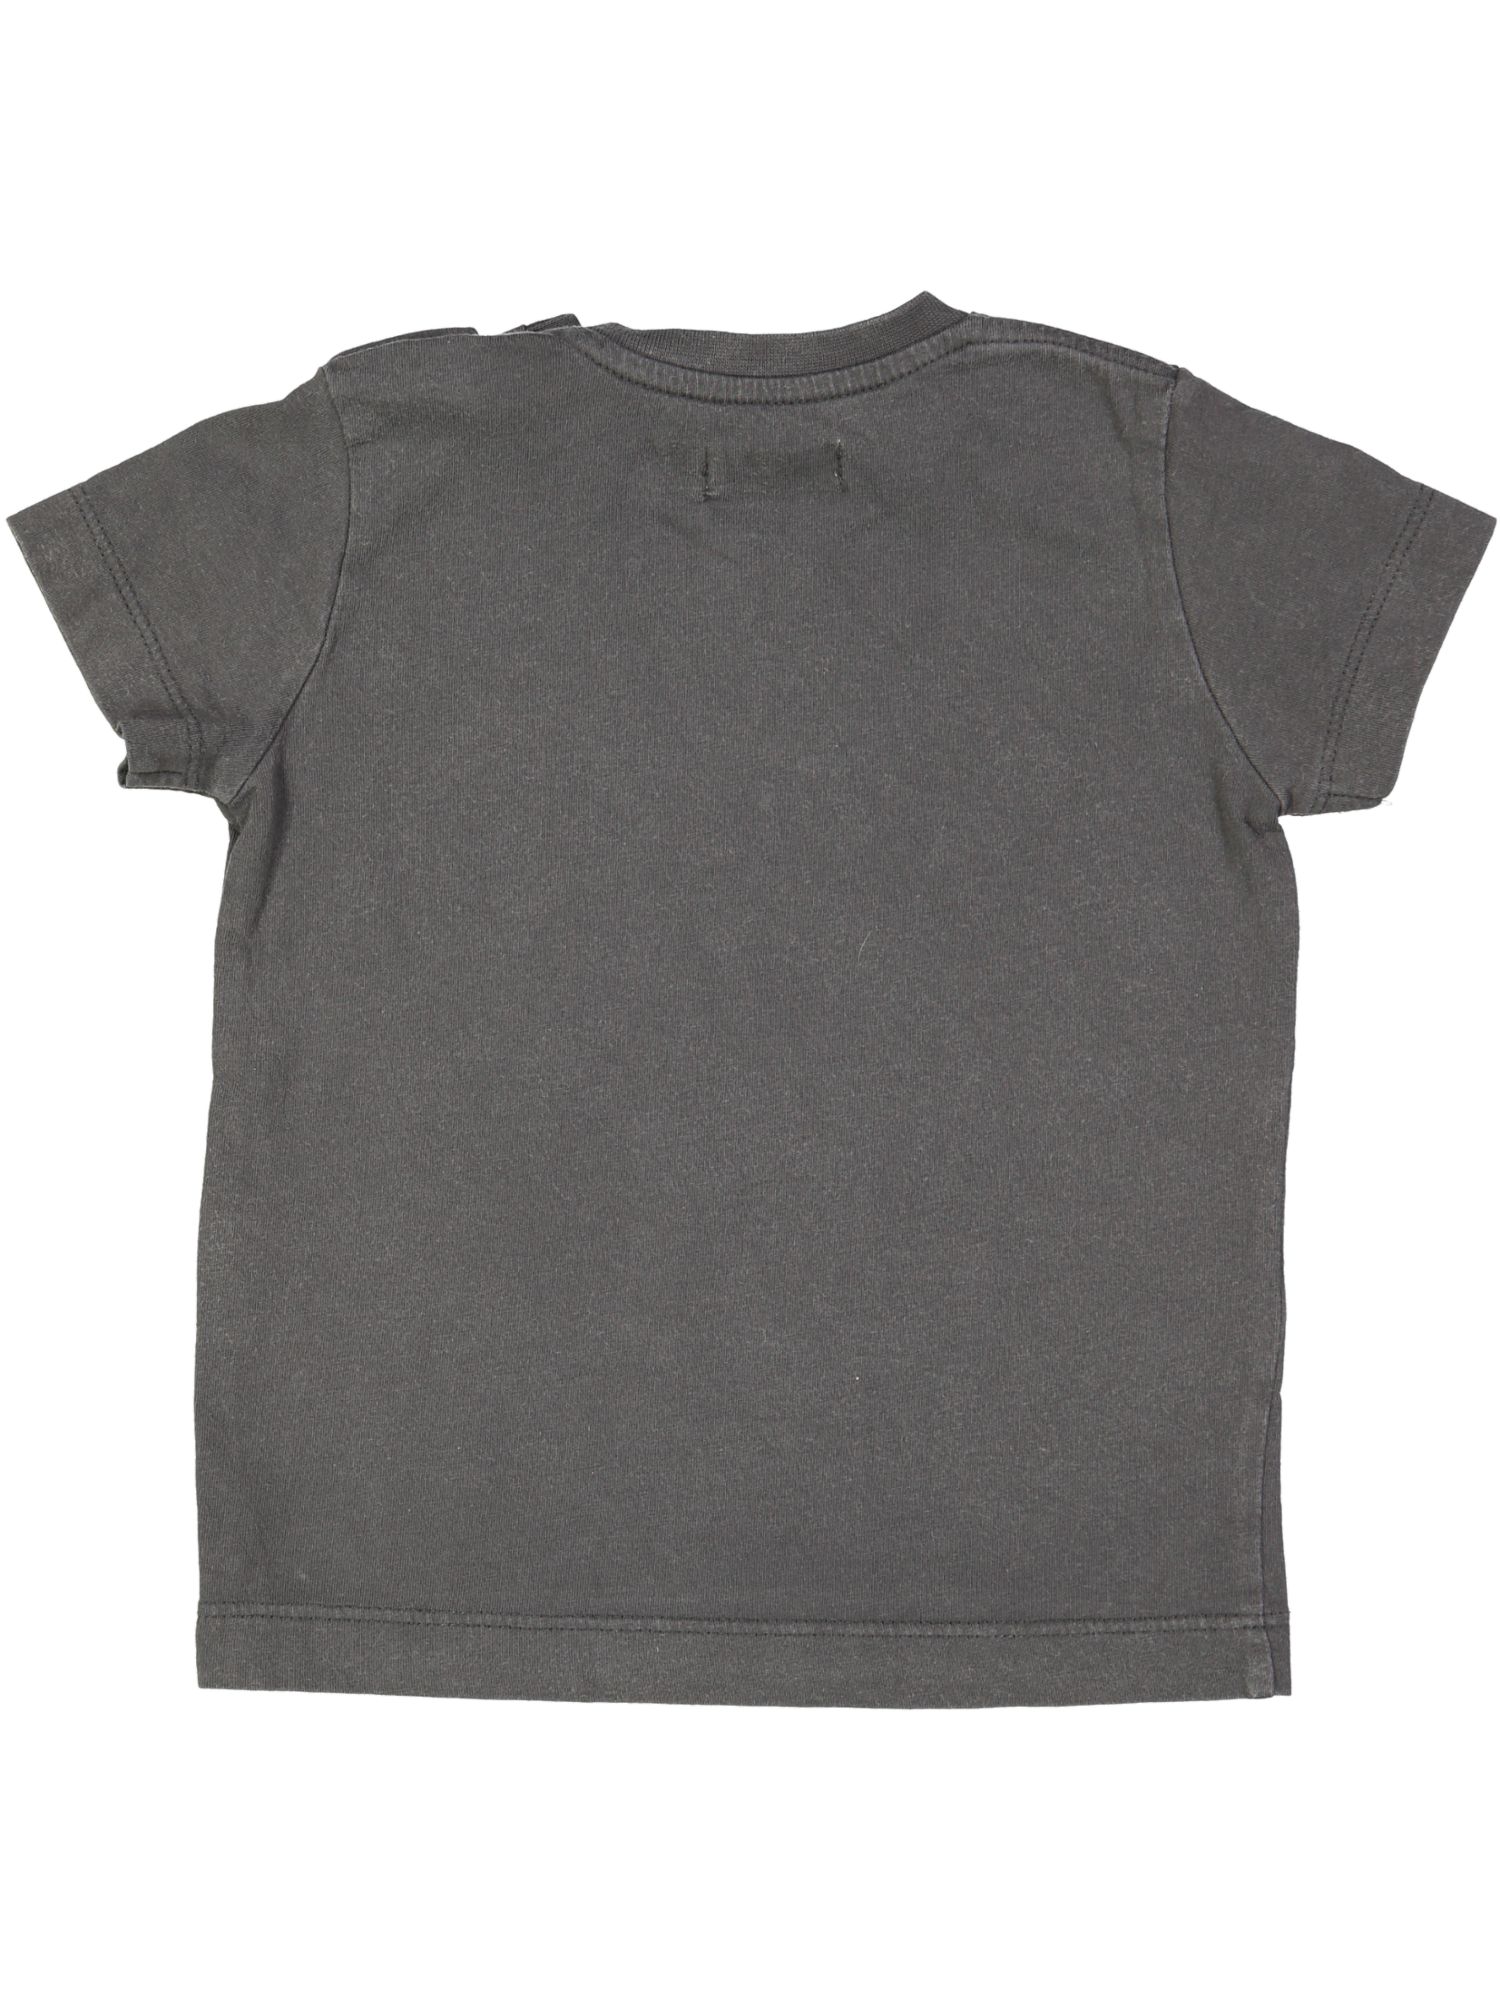 t-shirt grijs boy 12m